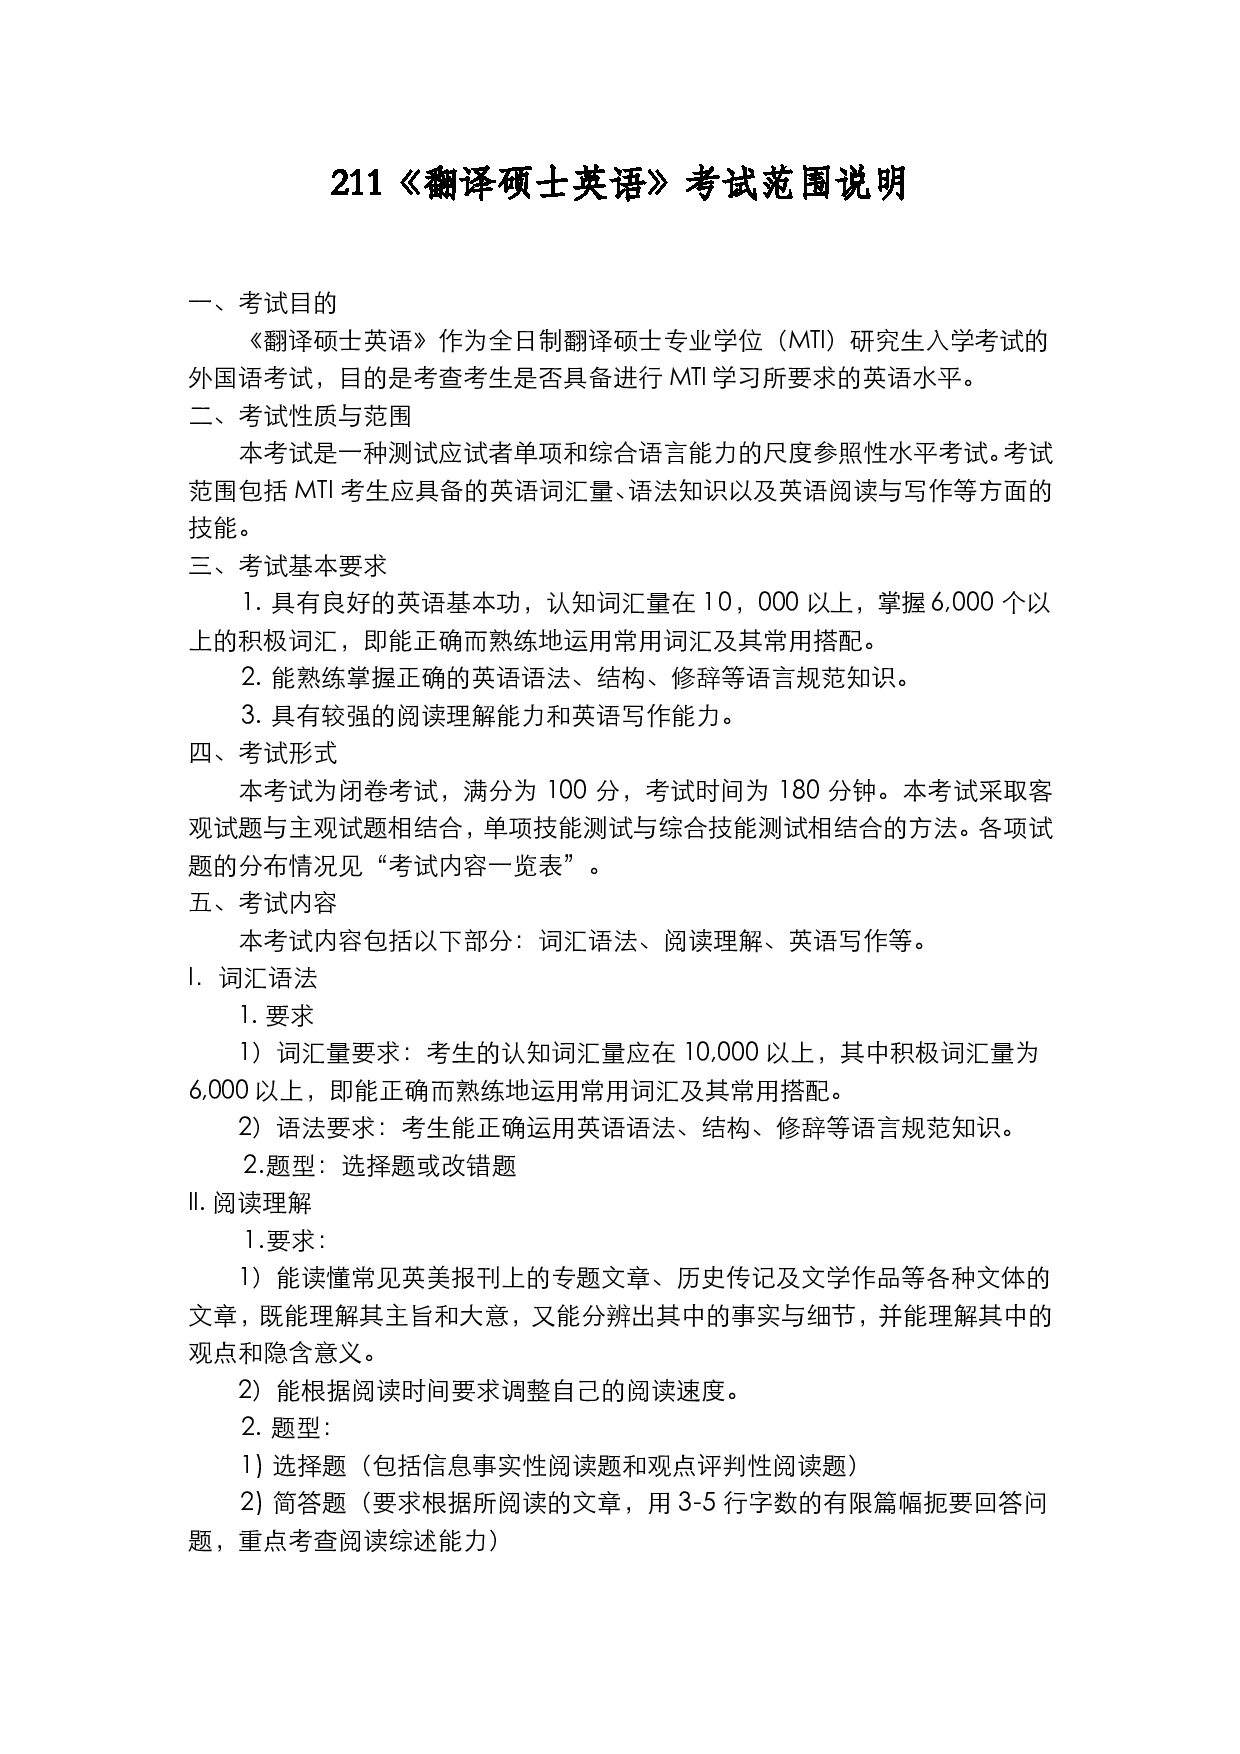 2022考研大纲：上海海洋大学2022年考研自命题科目 211翻译硕士英语 考试大纲第1页